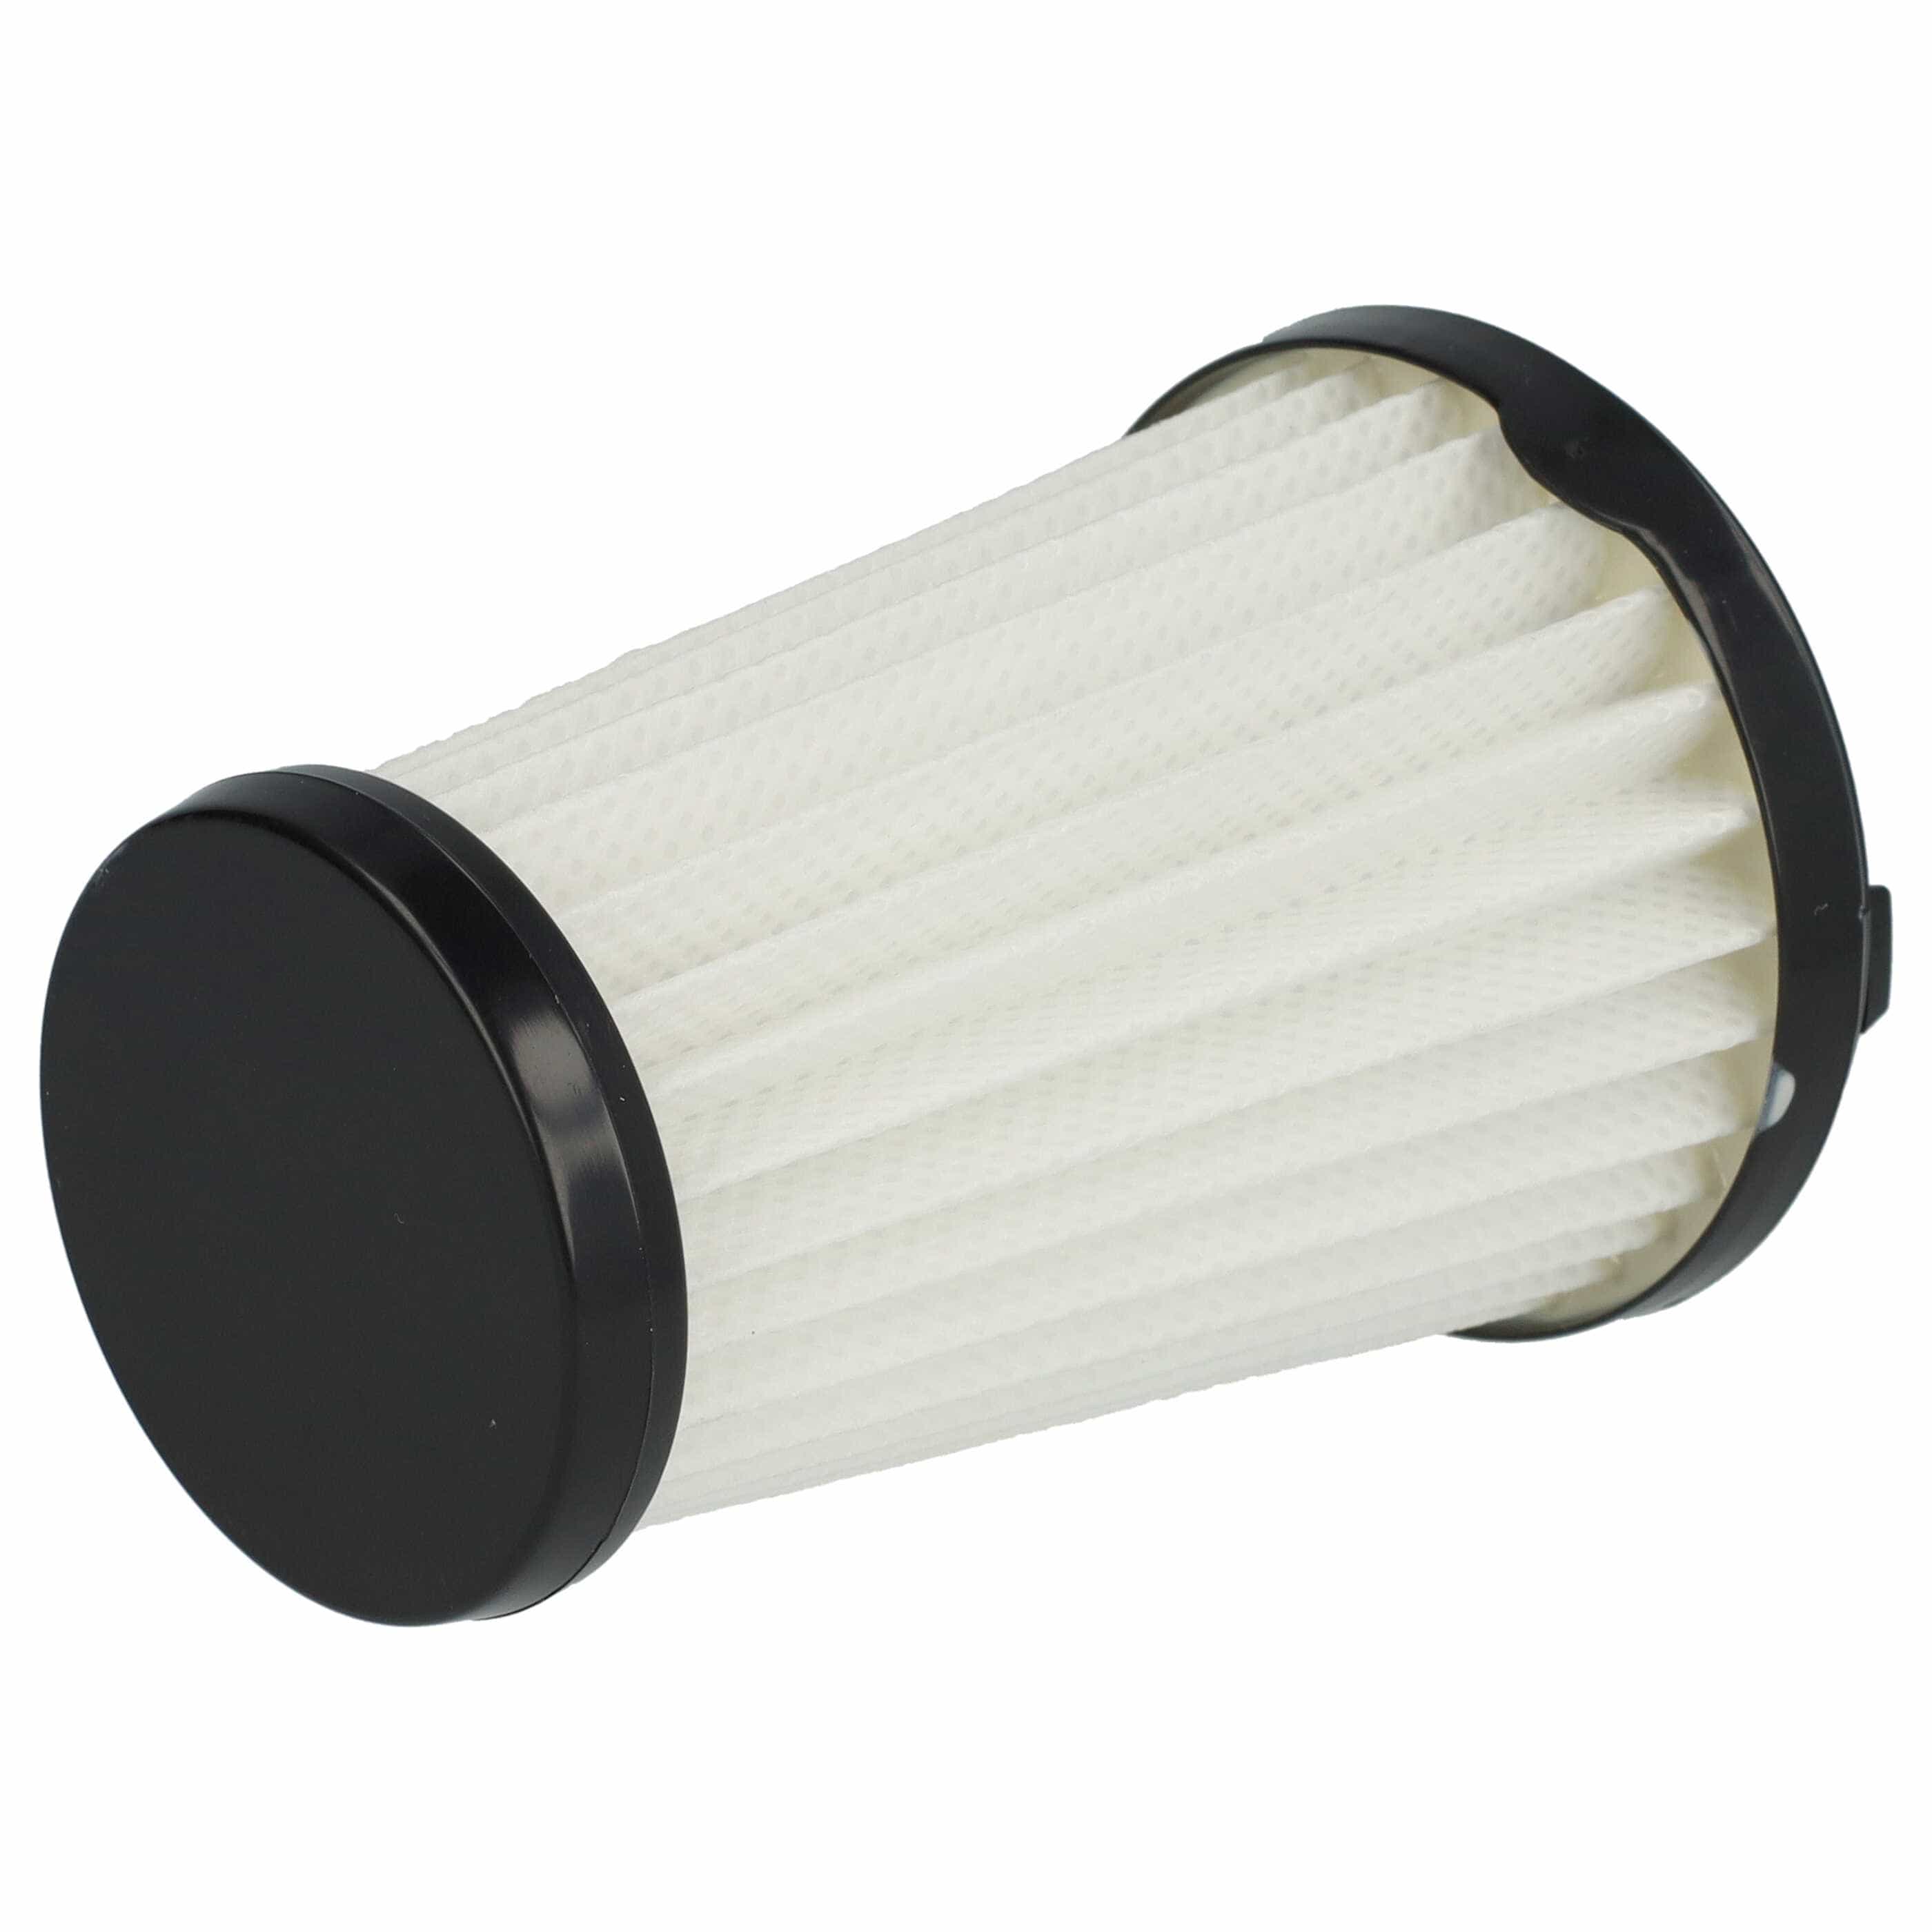 Filtre remplace AEG AEF150, 9001683755, 90094073100 pour aspirateur - filtre à lamelles